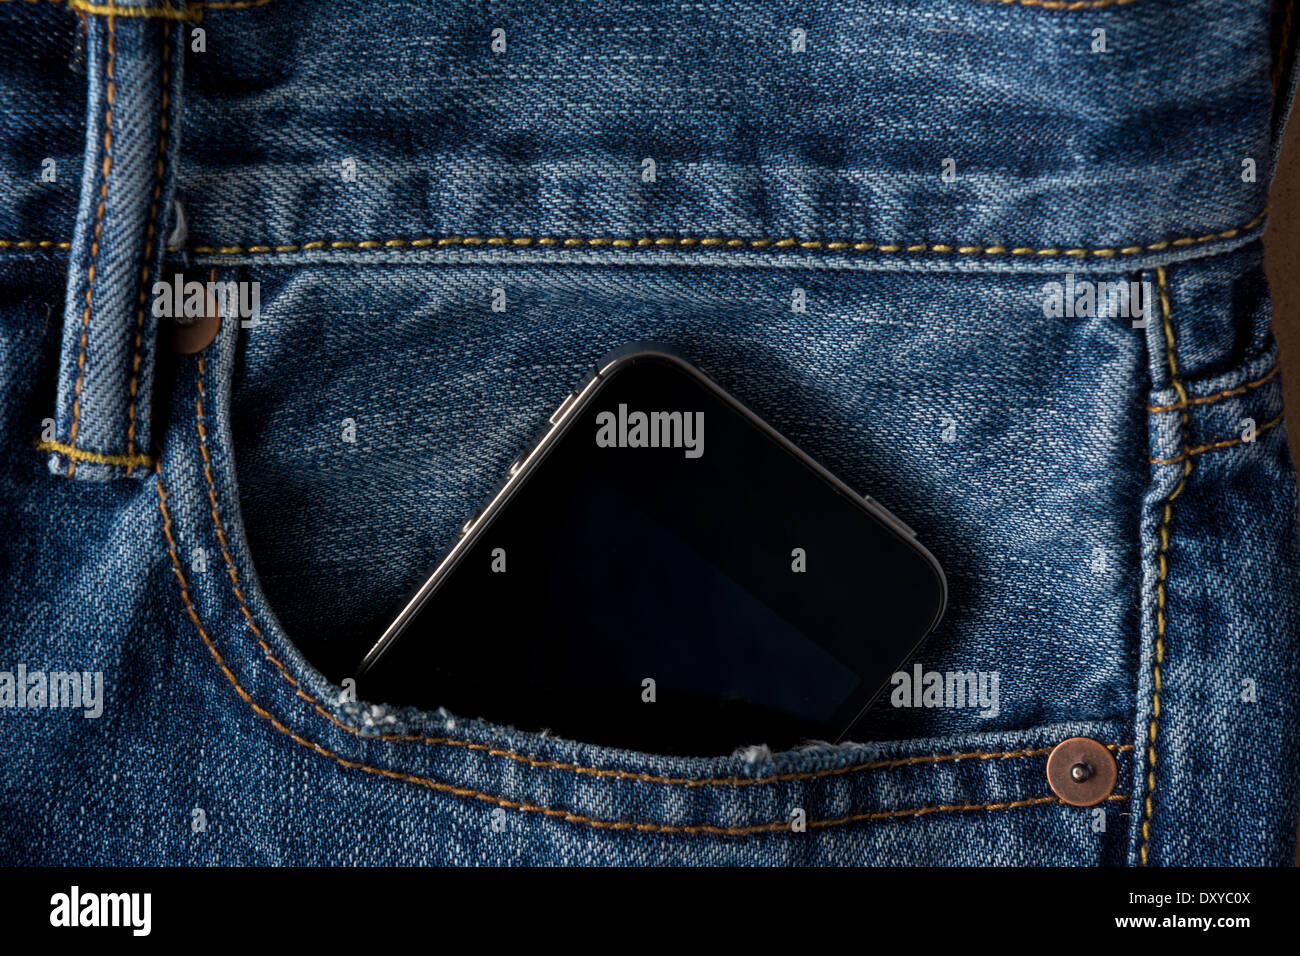 Libre de téléphone cellulaire dans la poche de jeans bleu Banque D'Images